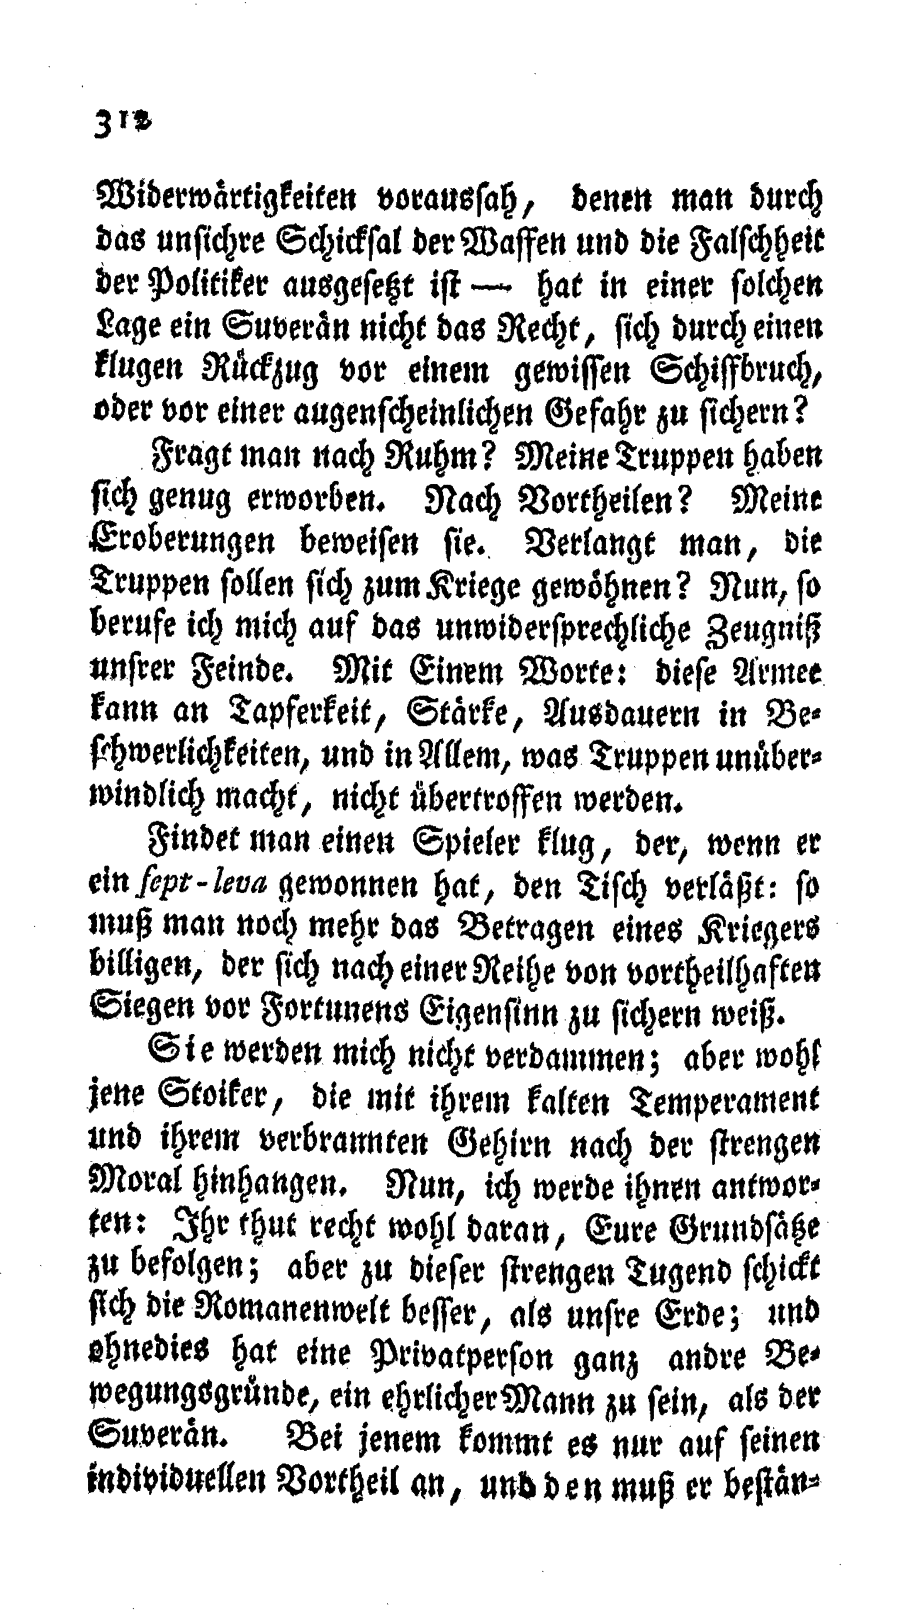 S. 312